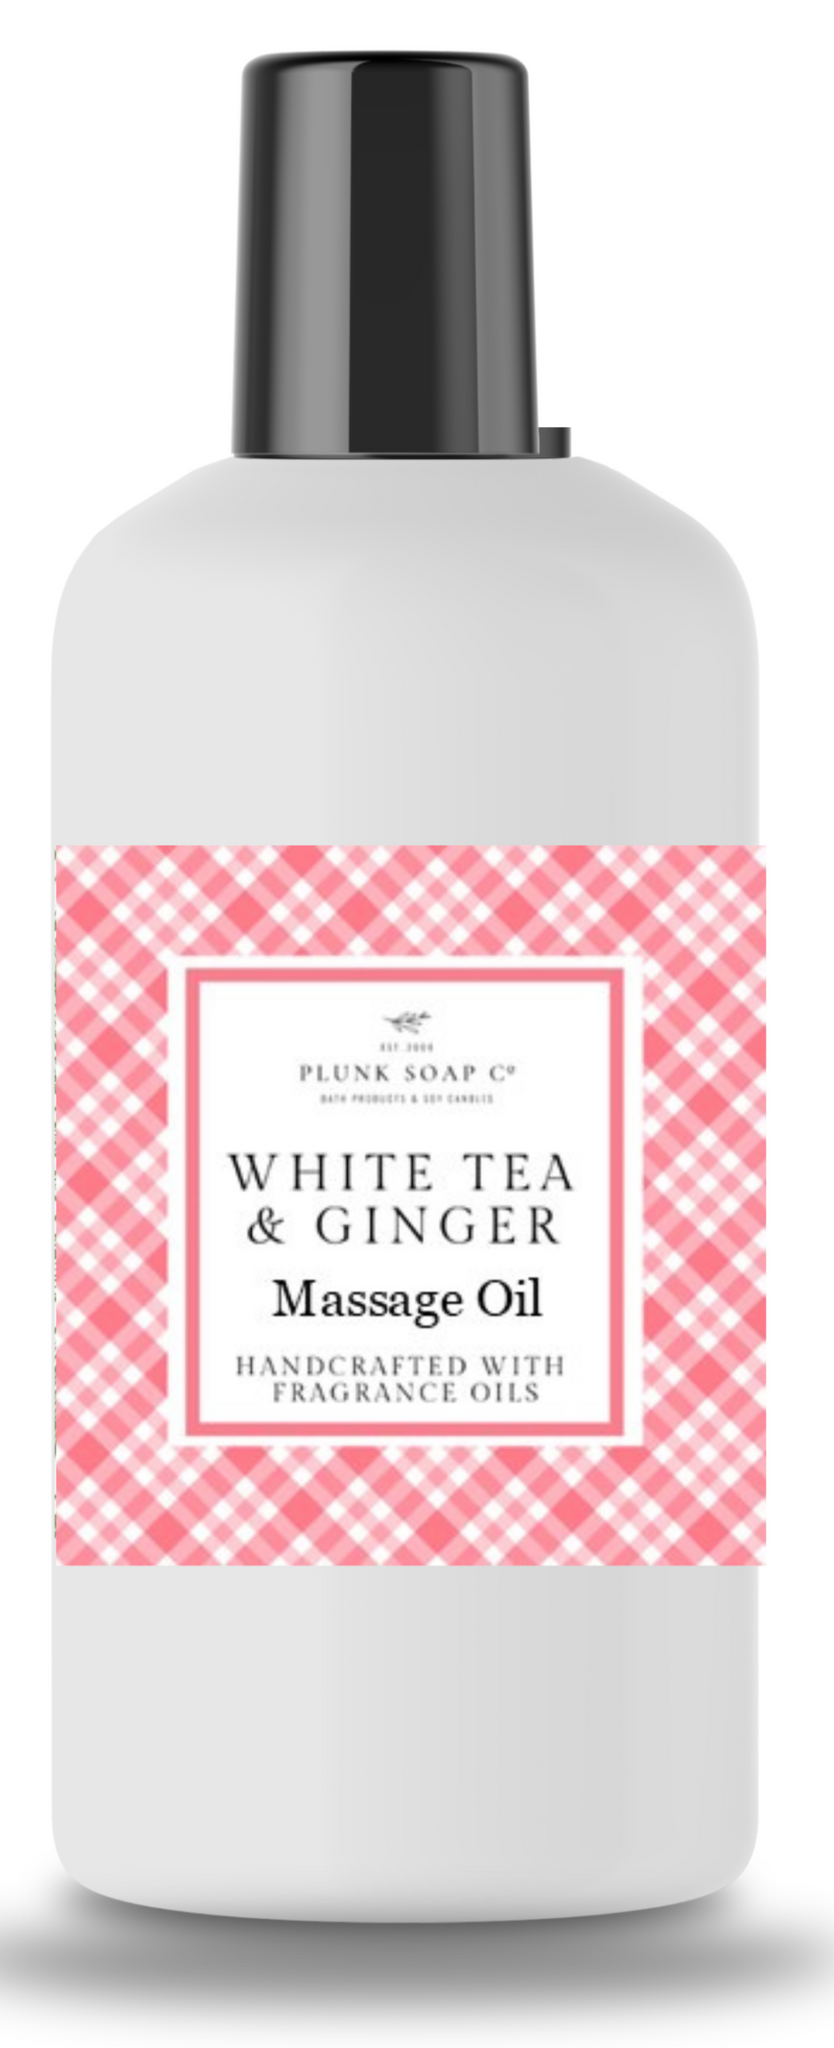 White Tea and Ginger Massage OIl